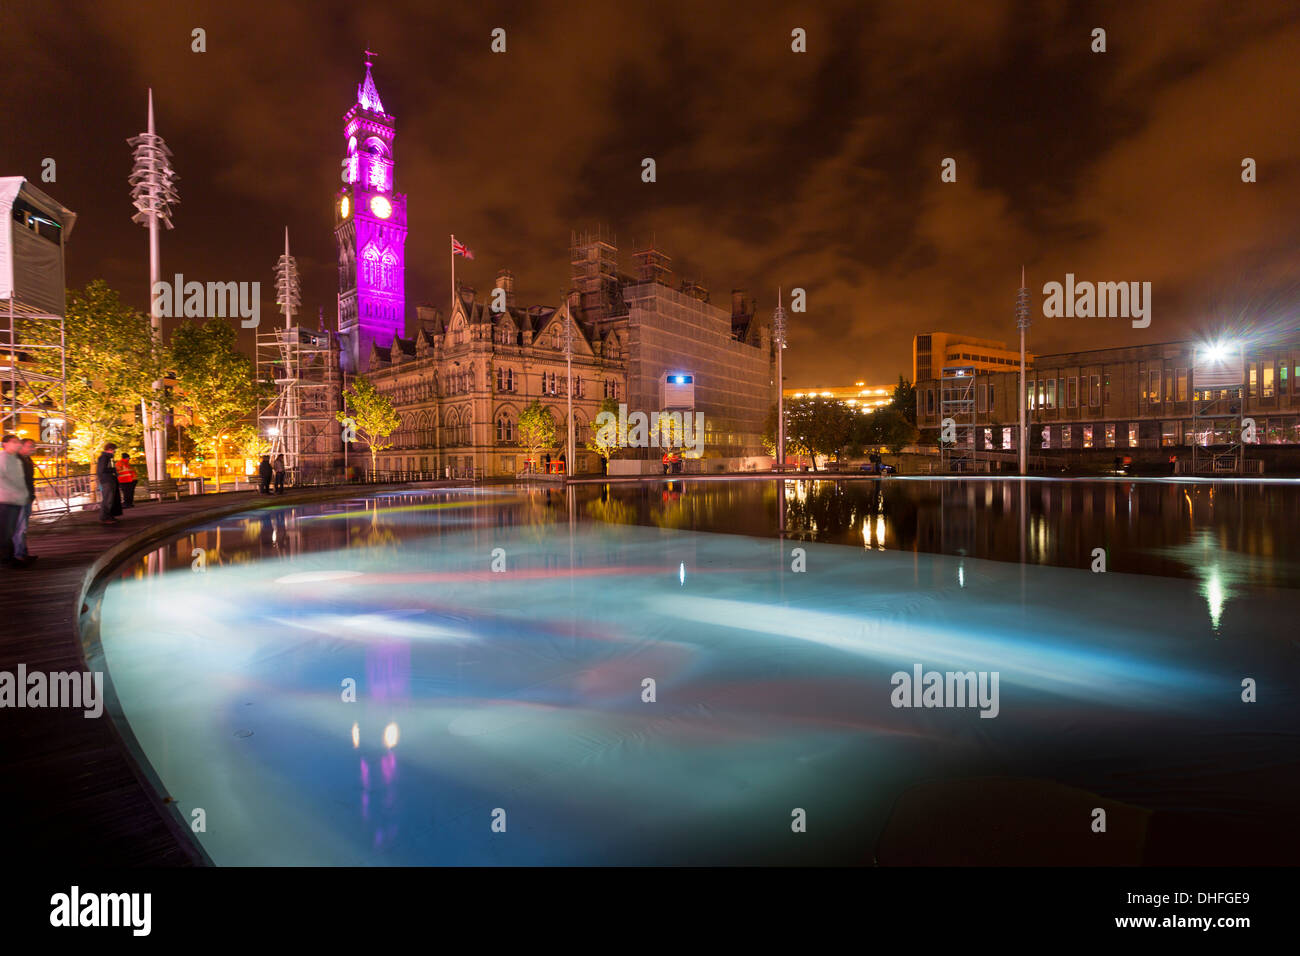 Eine gespiegelte Pool gedacht in Bradford City Park, von Shanaz Gulzar und Steve Manthorp, ein Kunstwerk der projizierten Bilder auf der w Stockfoto